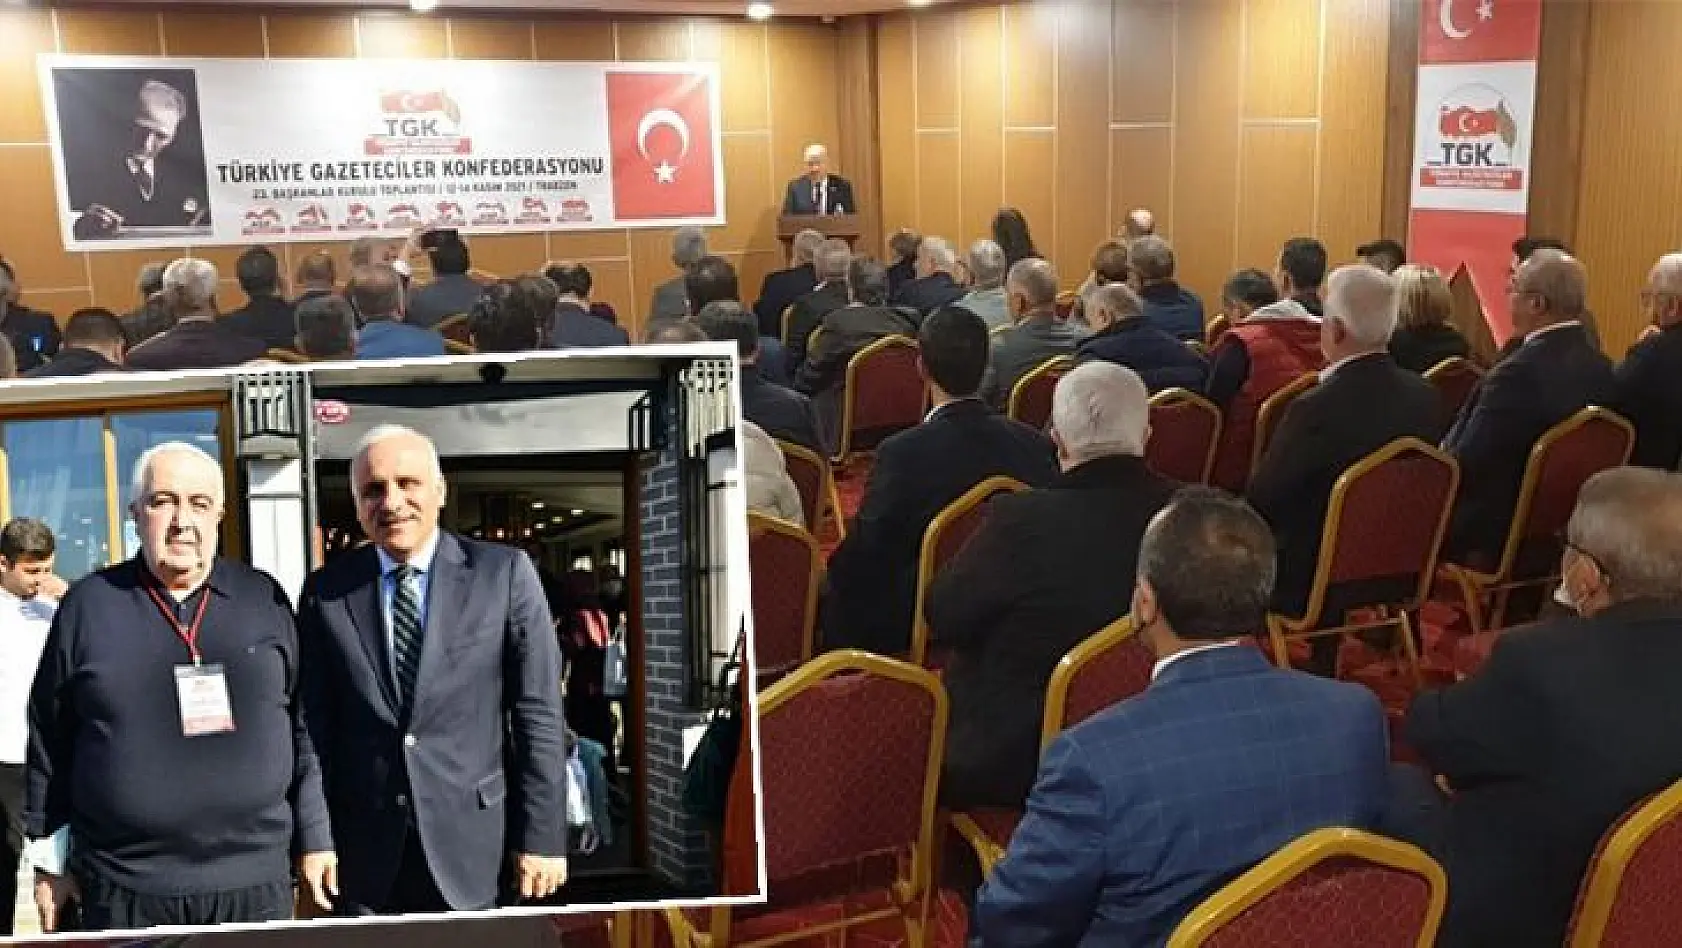 81 İlin Cemiyet Başkanları Trabzon'da Buluştu